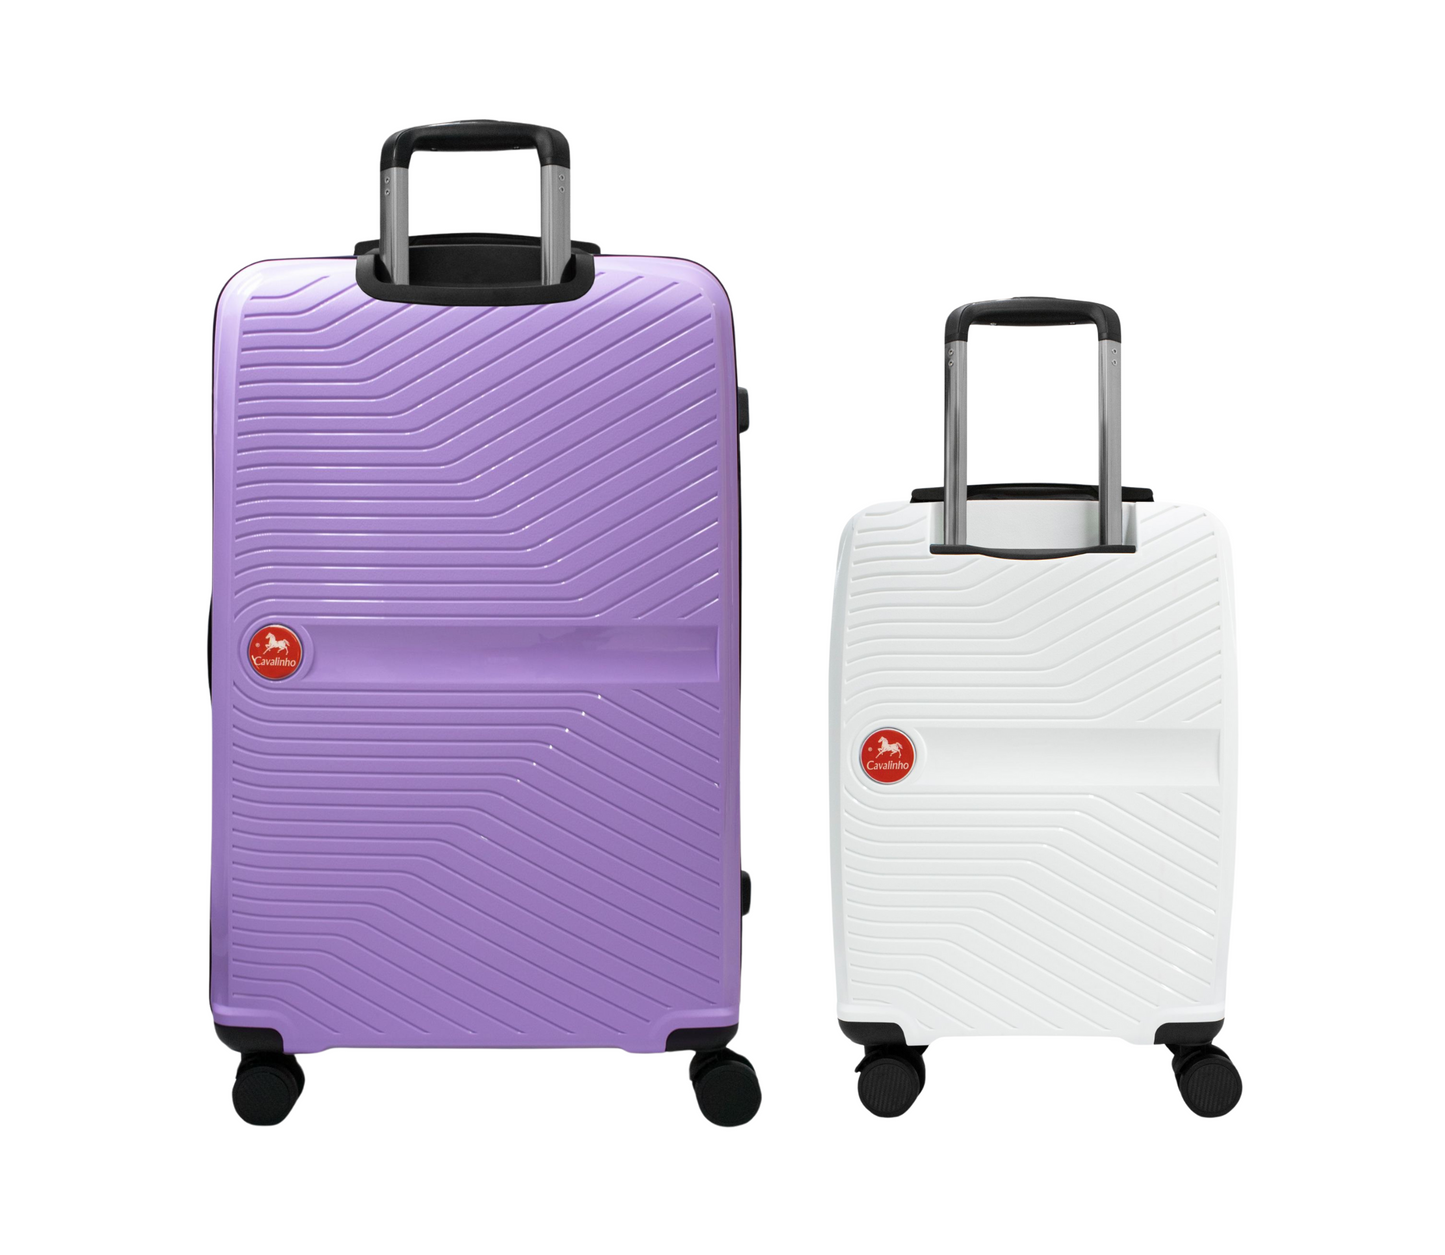 #color_ White Lilac | Cavalinho Canada & USA Colorful 2 Piece Luggage Set (19" & 28") - White Lilac - 68020004.0639.S1928._3_2